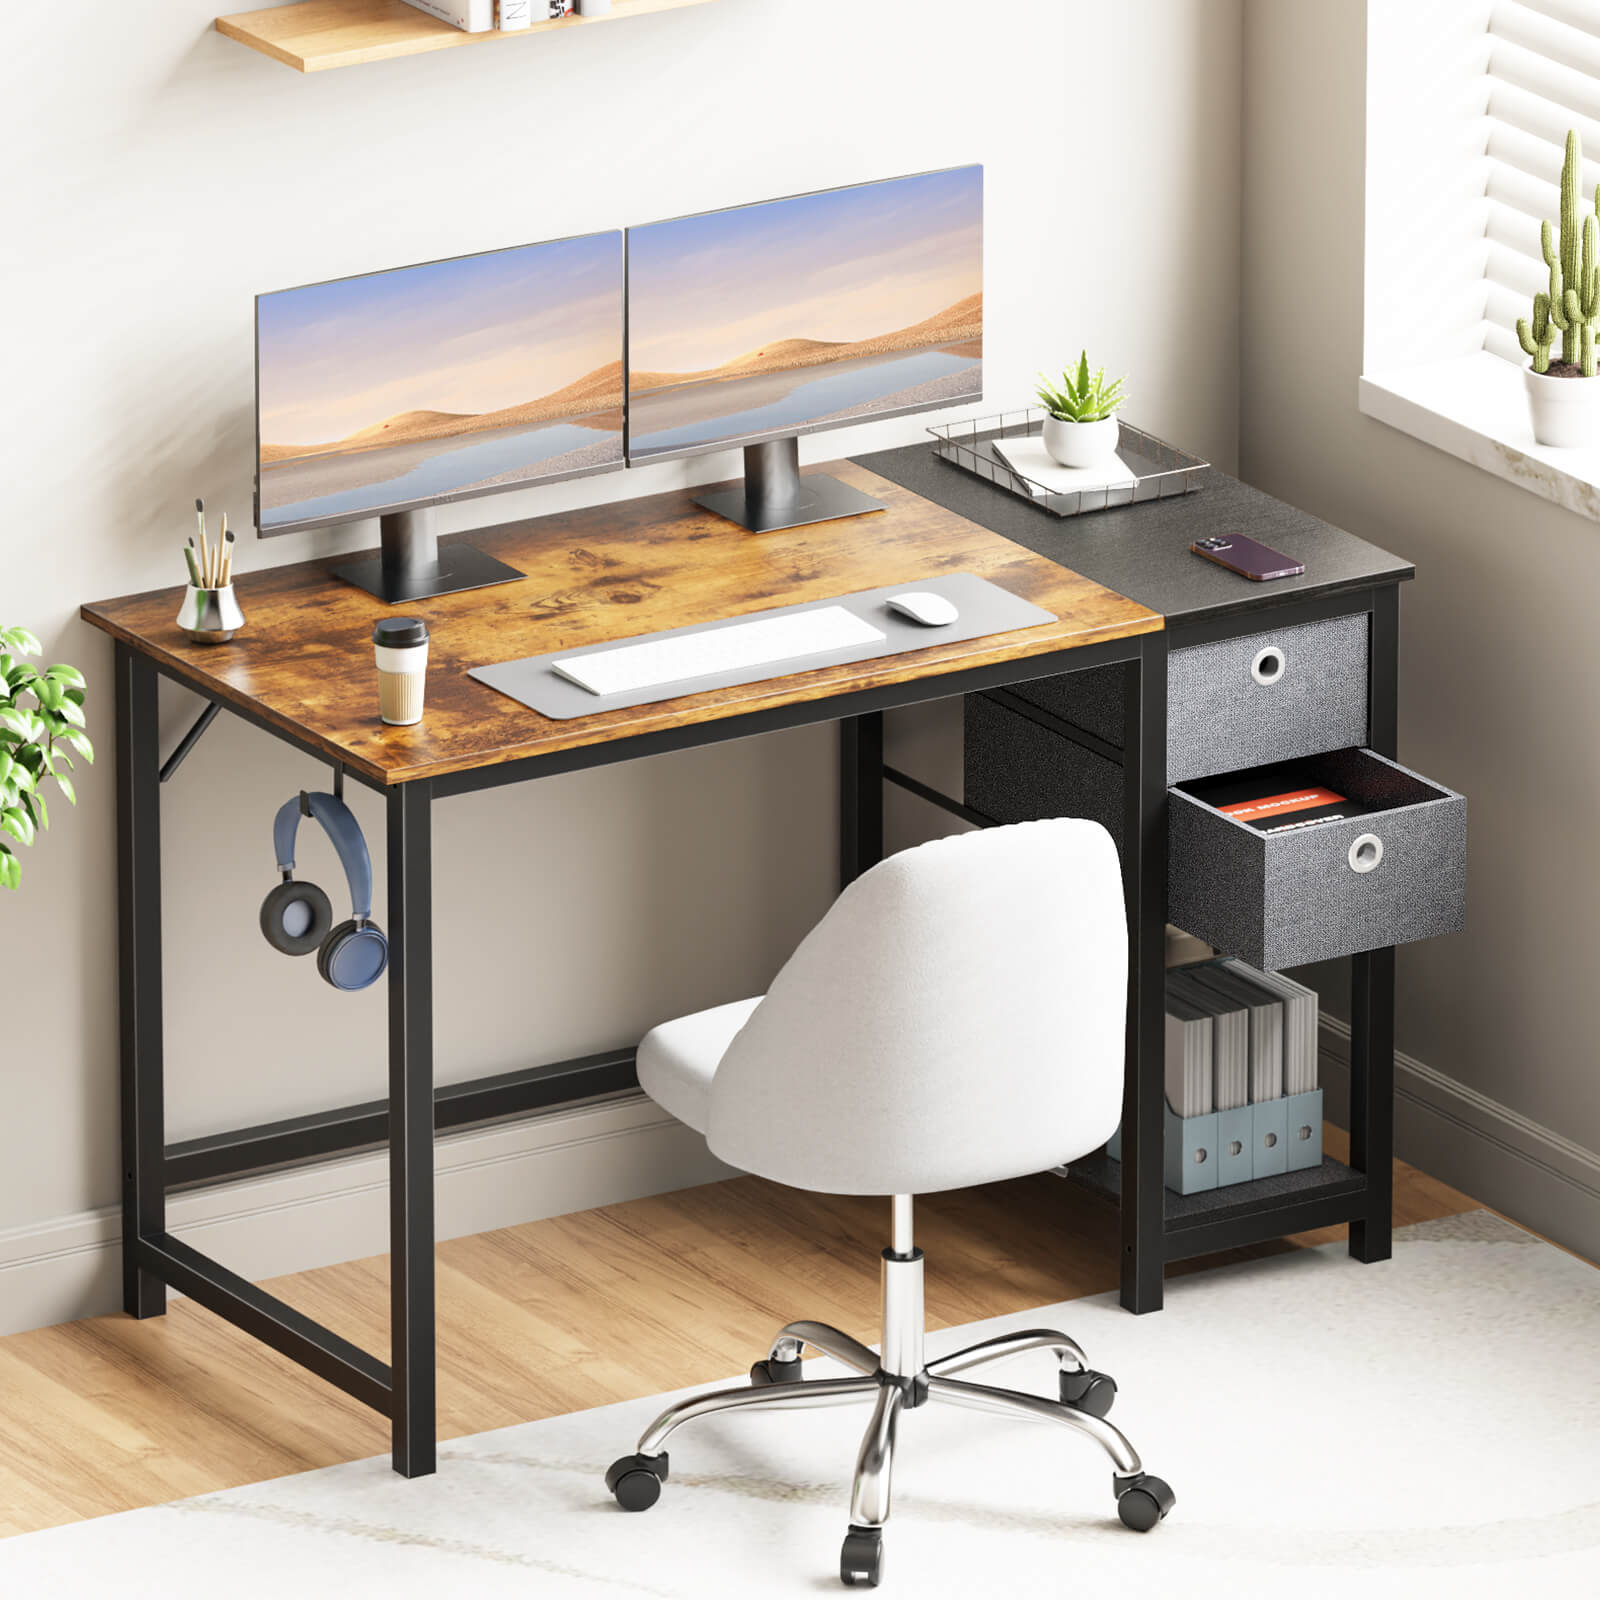 Computer Desk -40/47/55 inch Desk Study Desk with 2 Drawer Storage Shelf Headphone Hook for Bedroom, Game Room, Office, Living Room